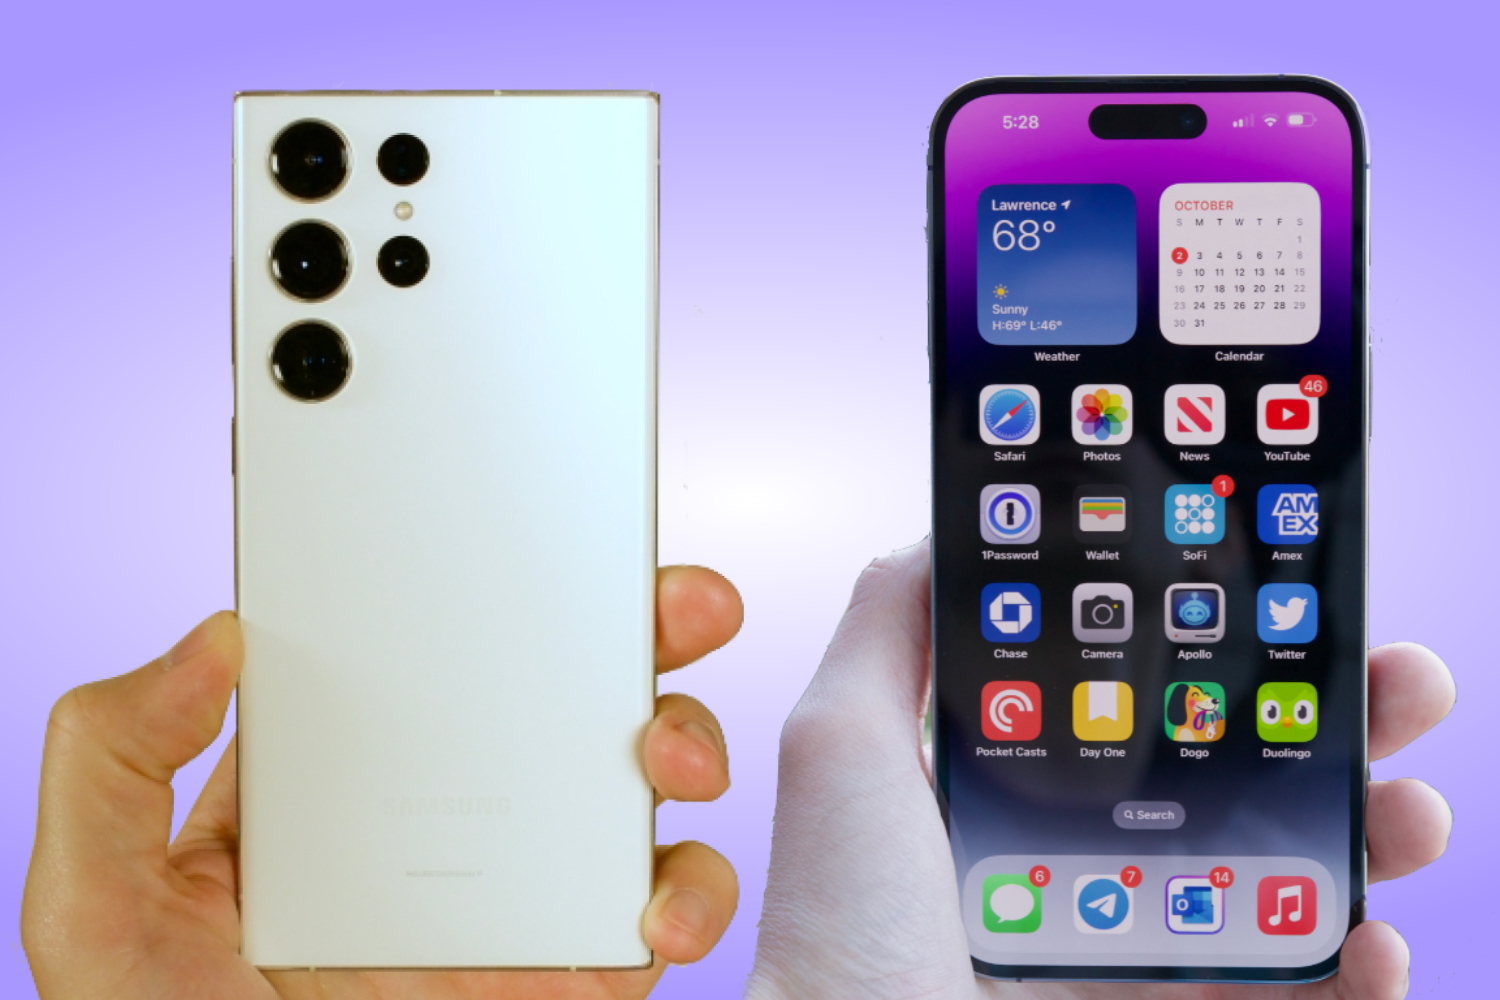 iphone 1 2 3 4 5 6 comparison